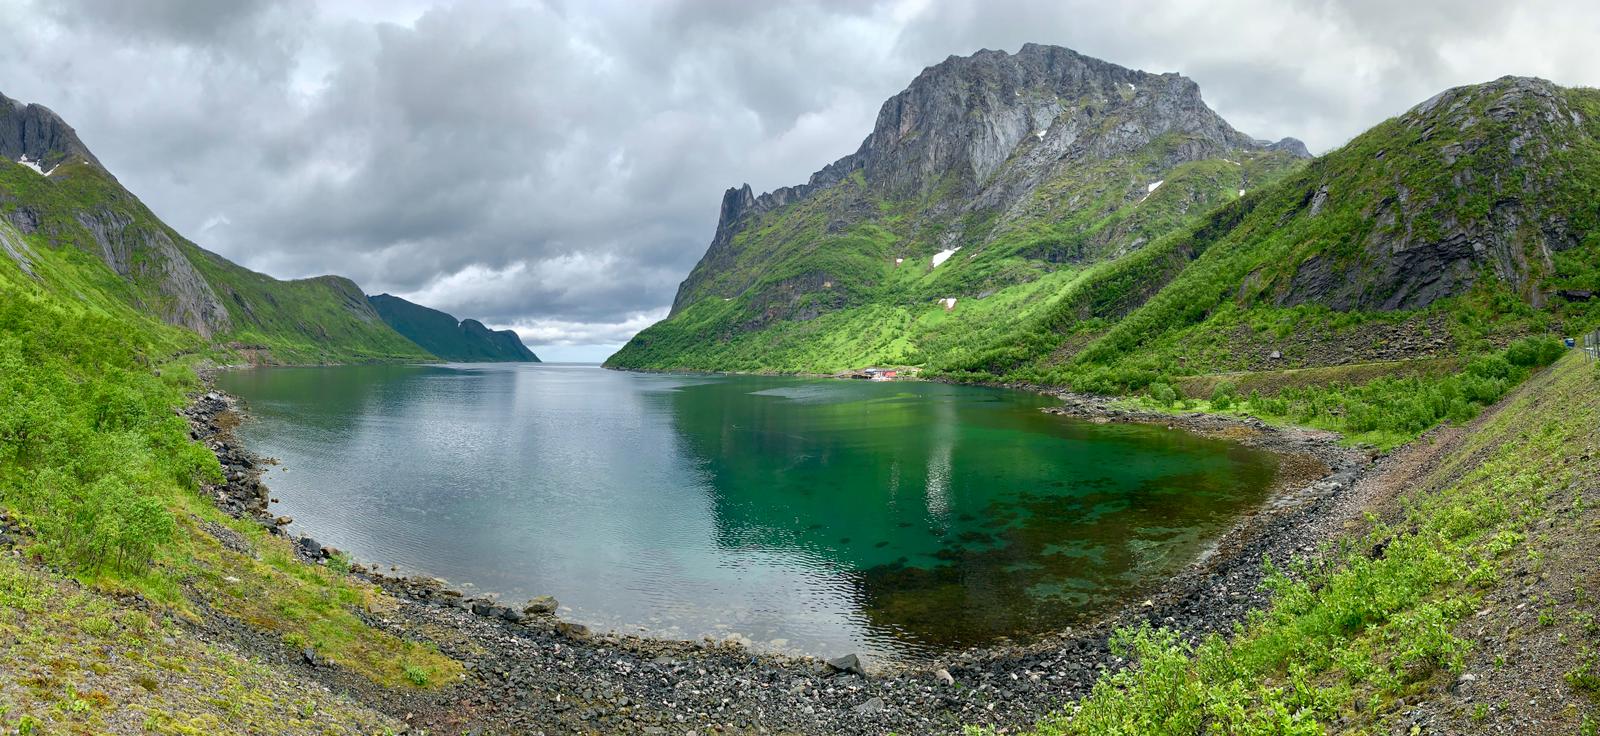 1 - Norwegian Lake